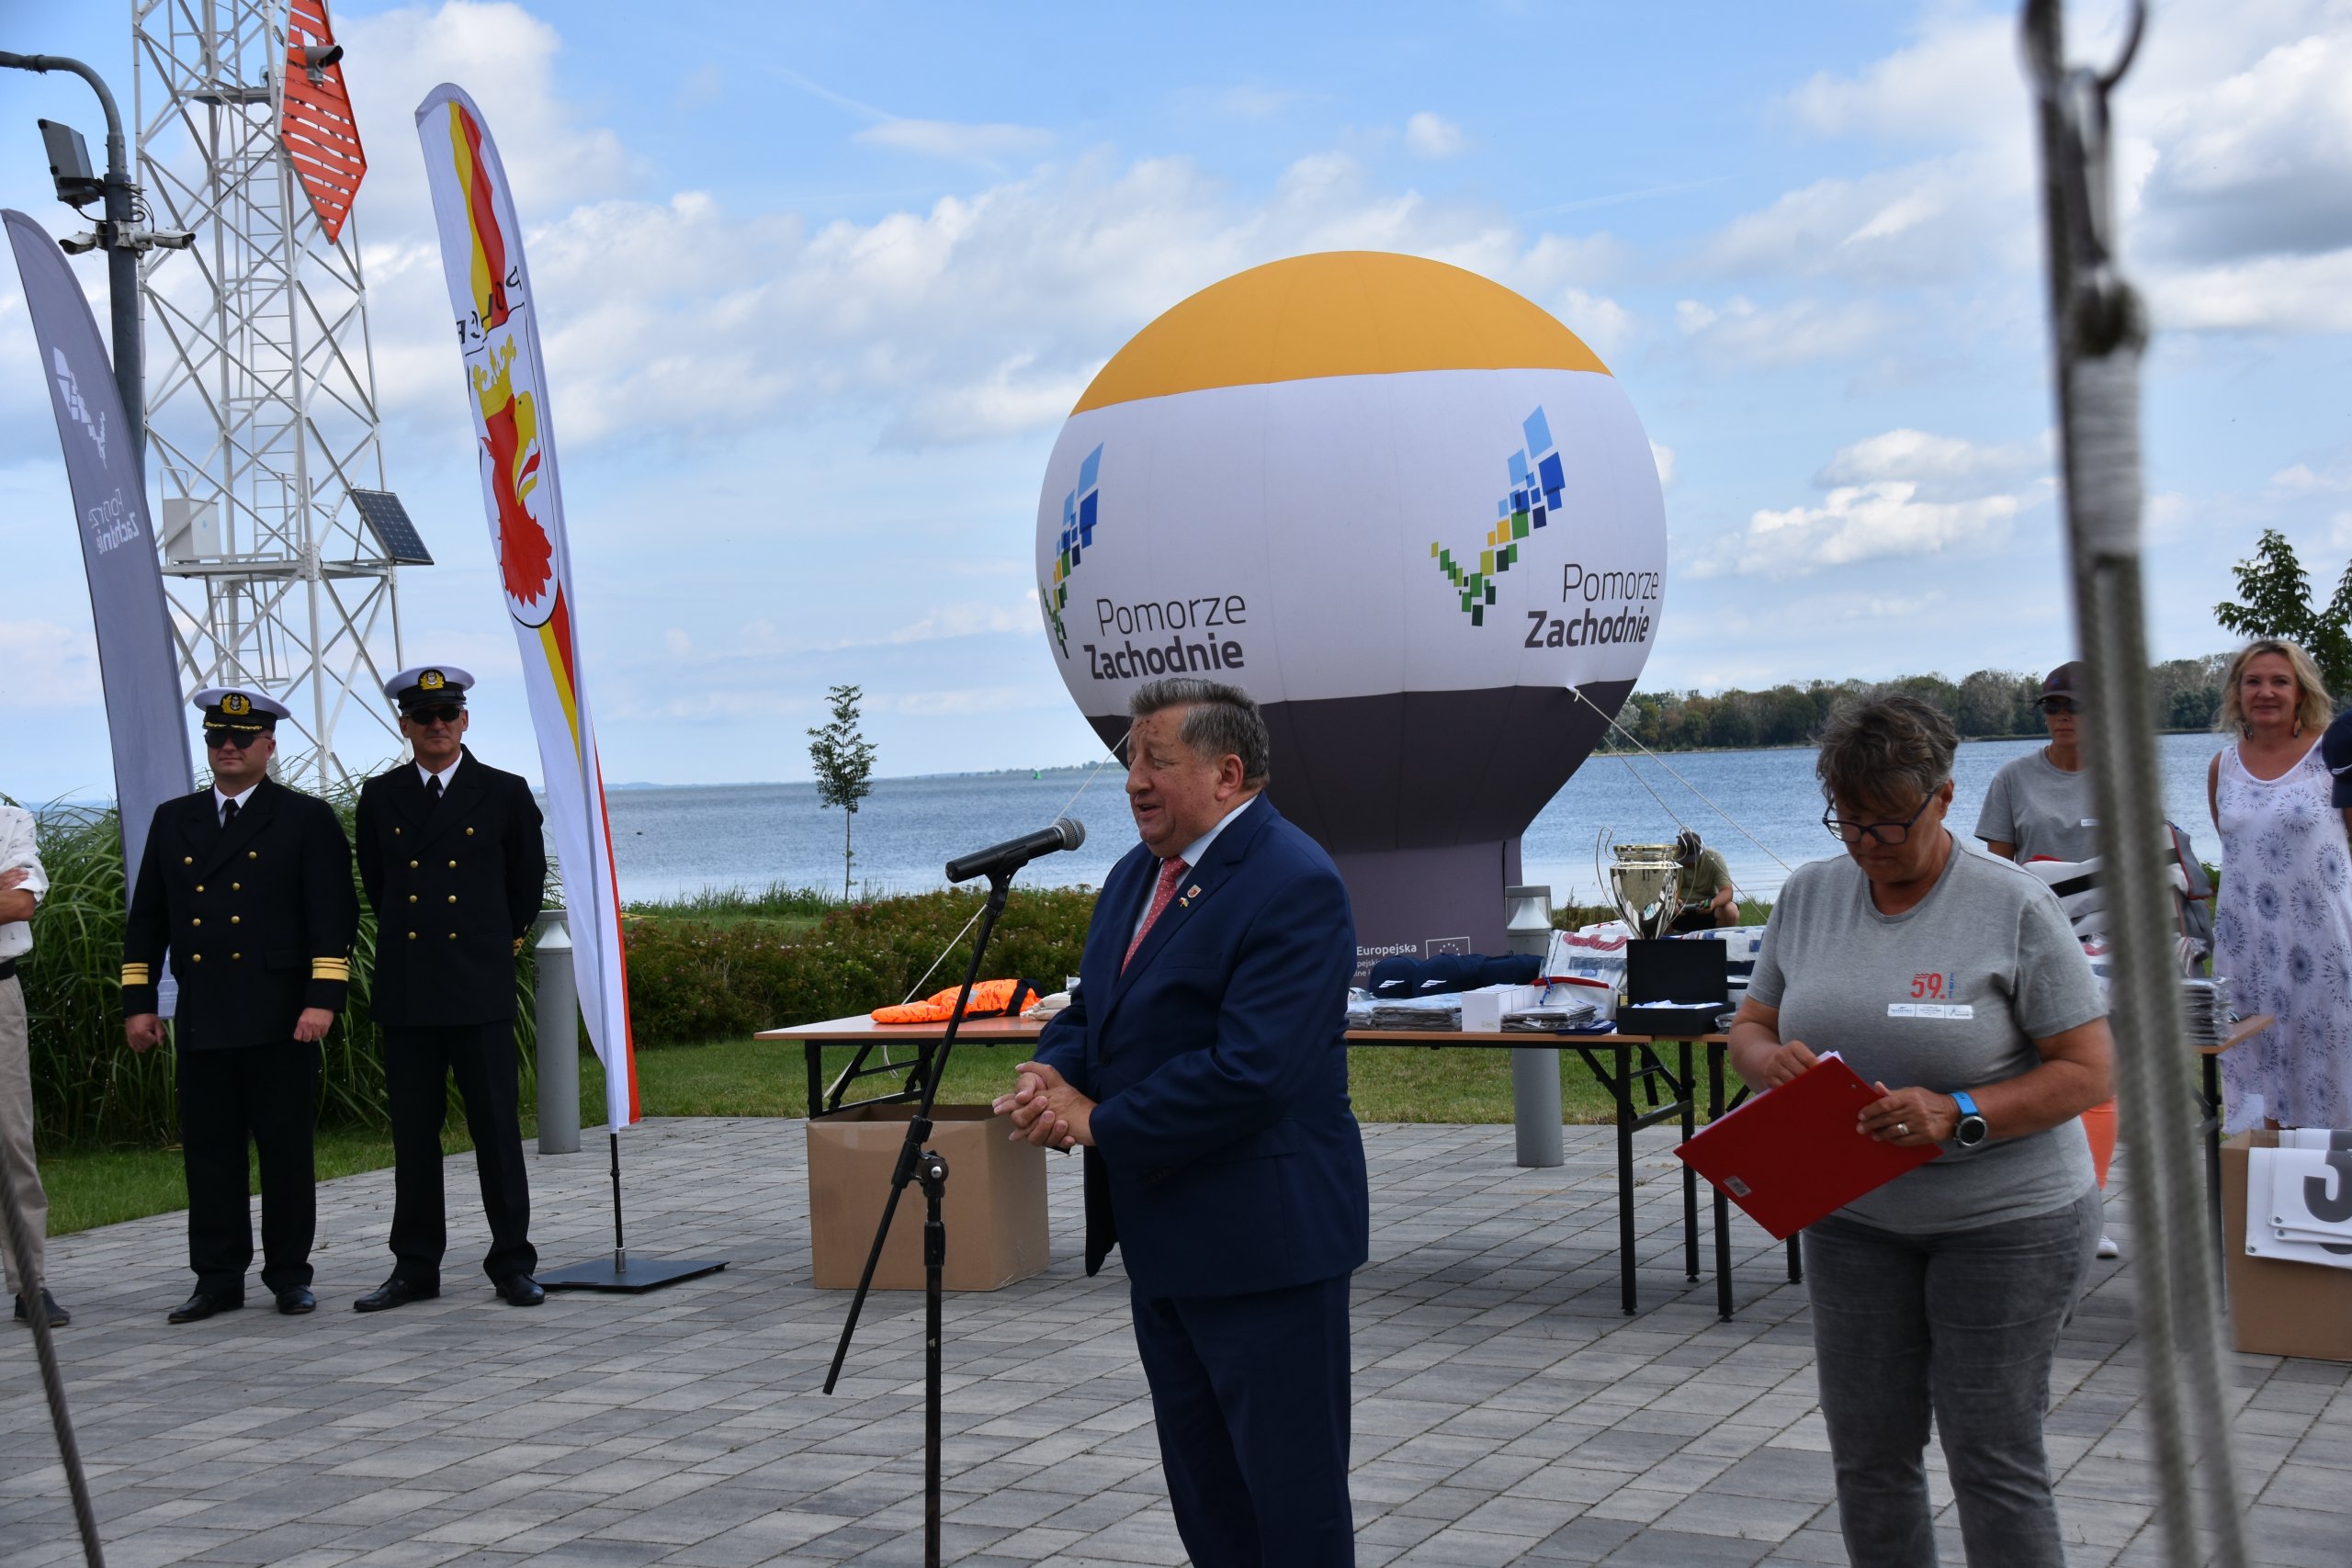 Władysław Diakun Burmistrz Polic przemawiający przez mikrofon do wszystich uczestników regat, w tle widoczny jest balon z logiem pomorza zachodniego.